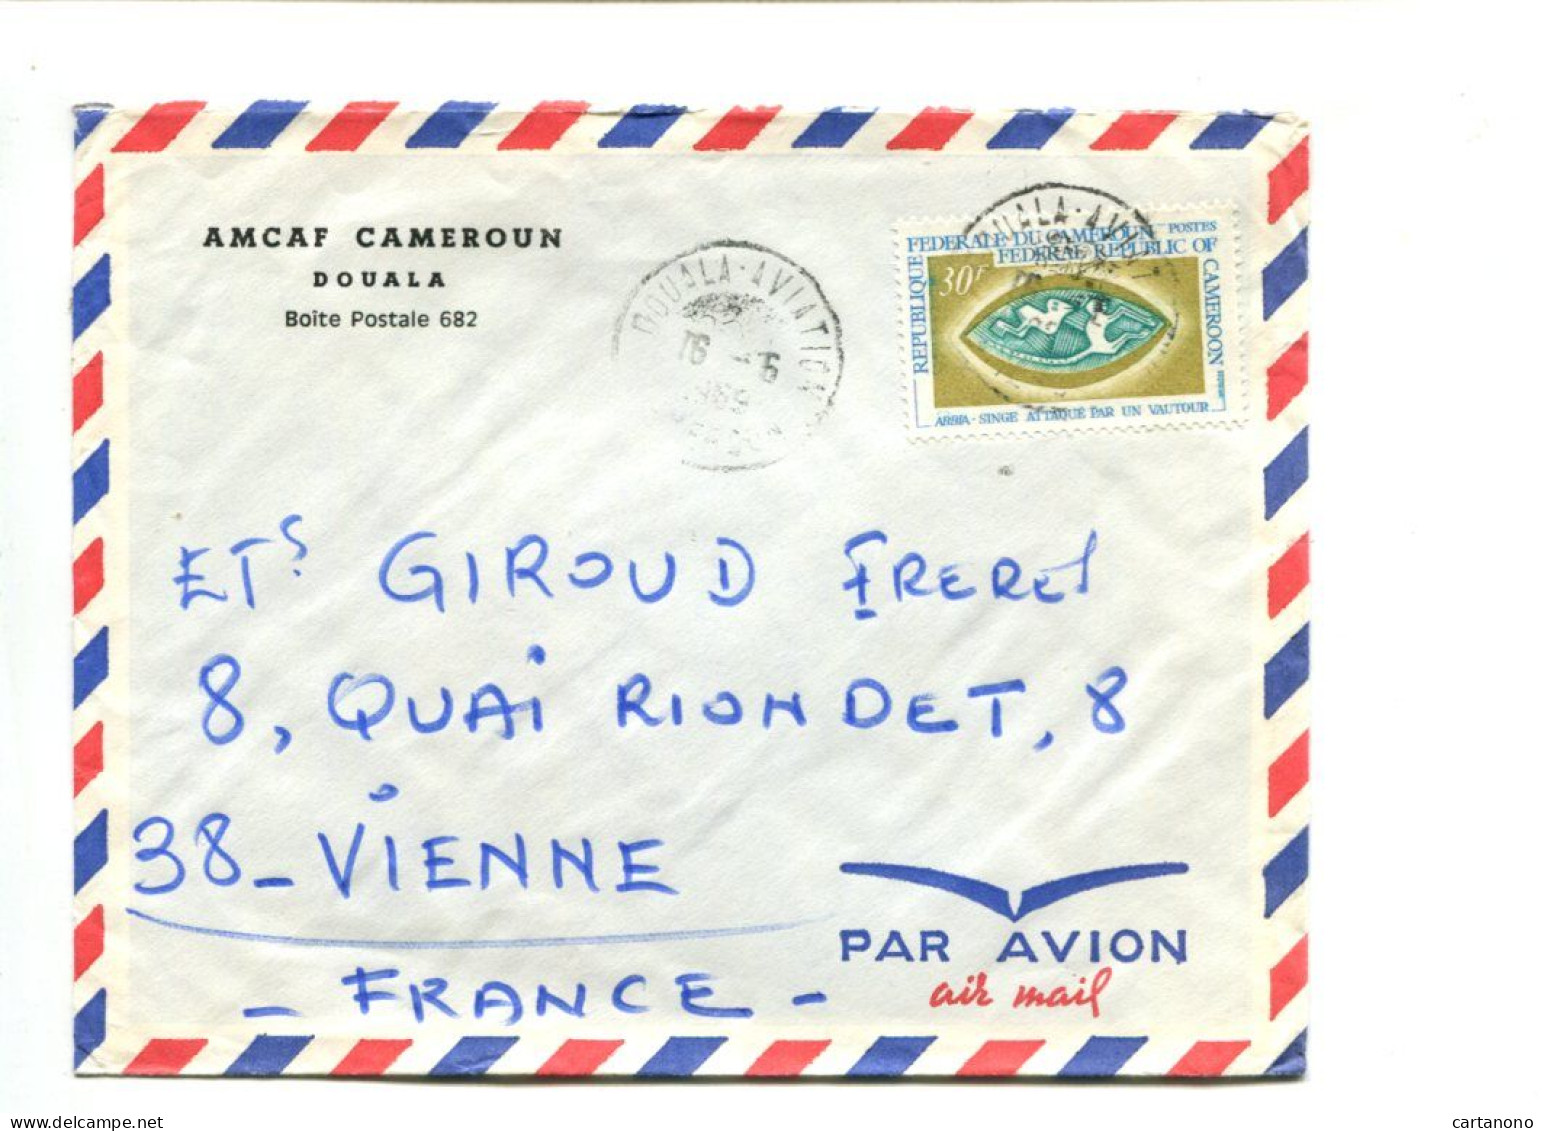 CAMEROUN - Affranchissement Sur Lettre Par Avion - ABBIA / Singe Attaqué Par Un Vautour - Cameroun (1960-...)